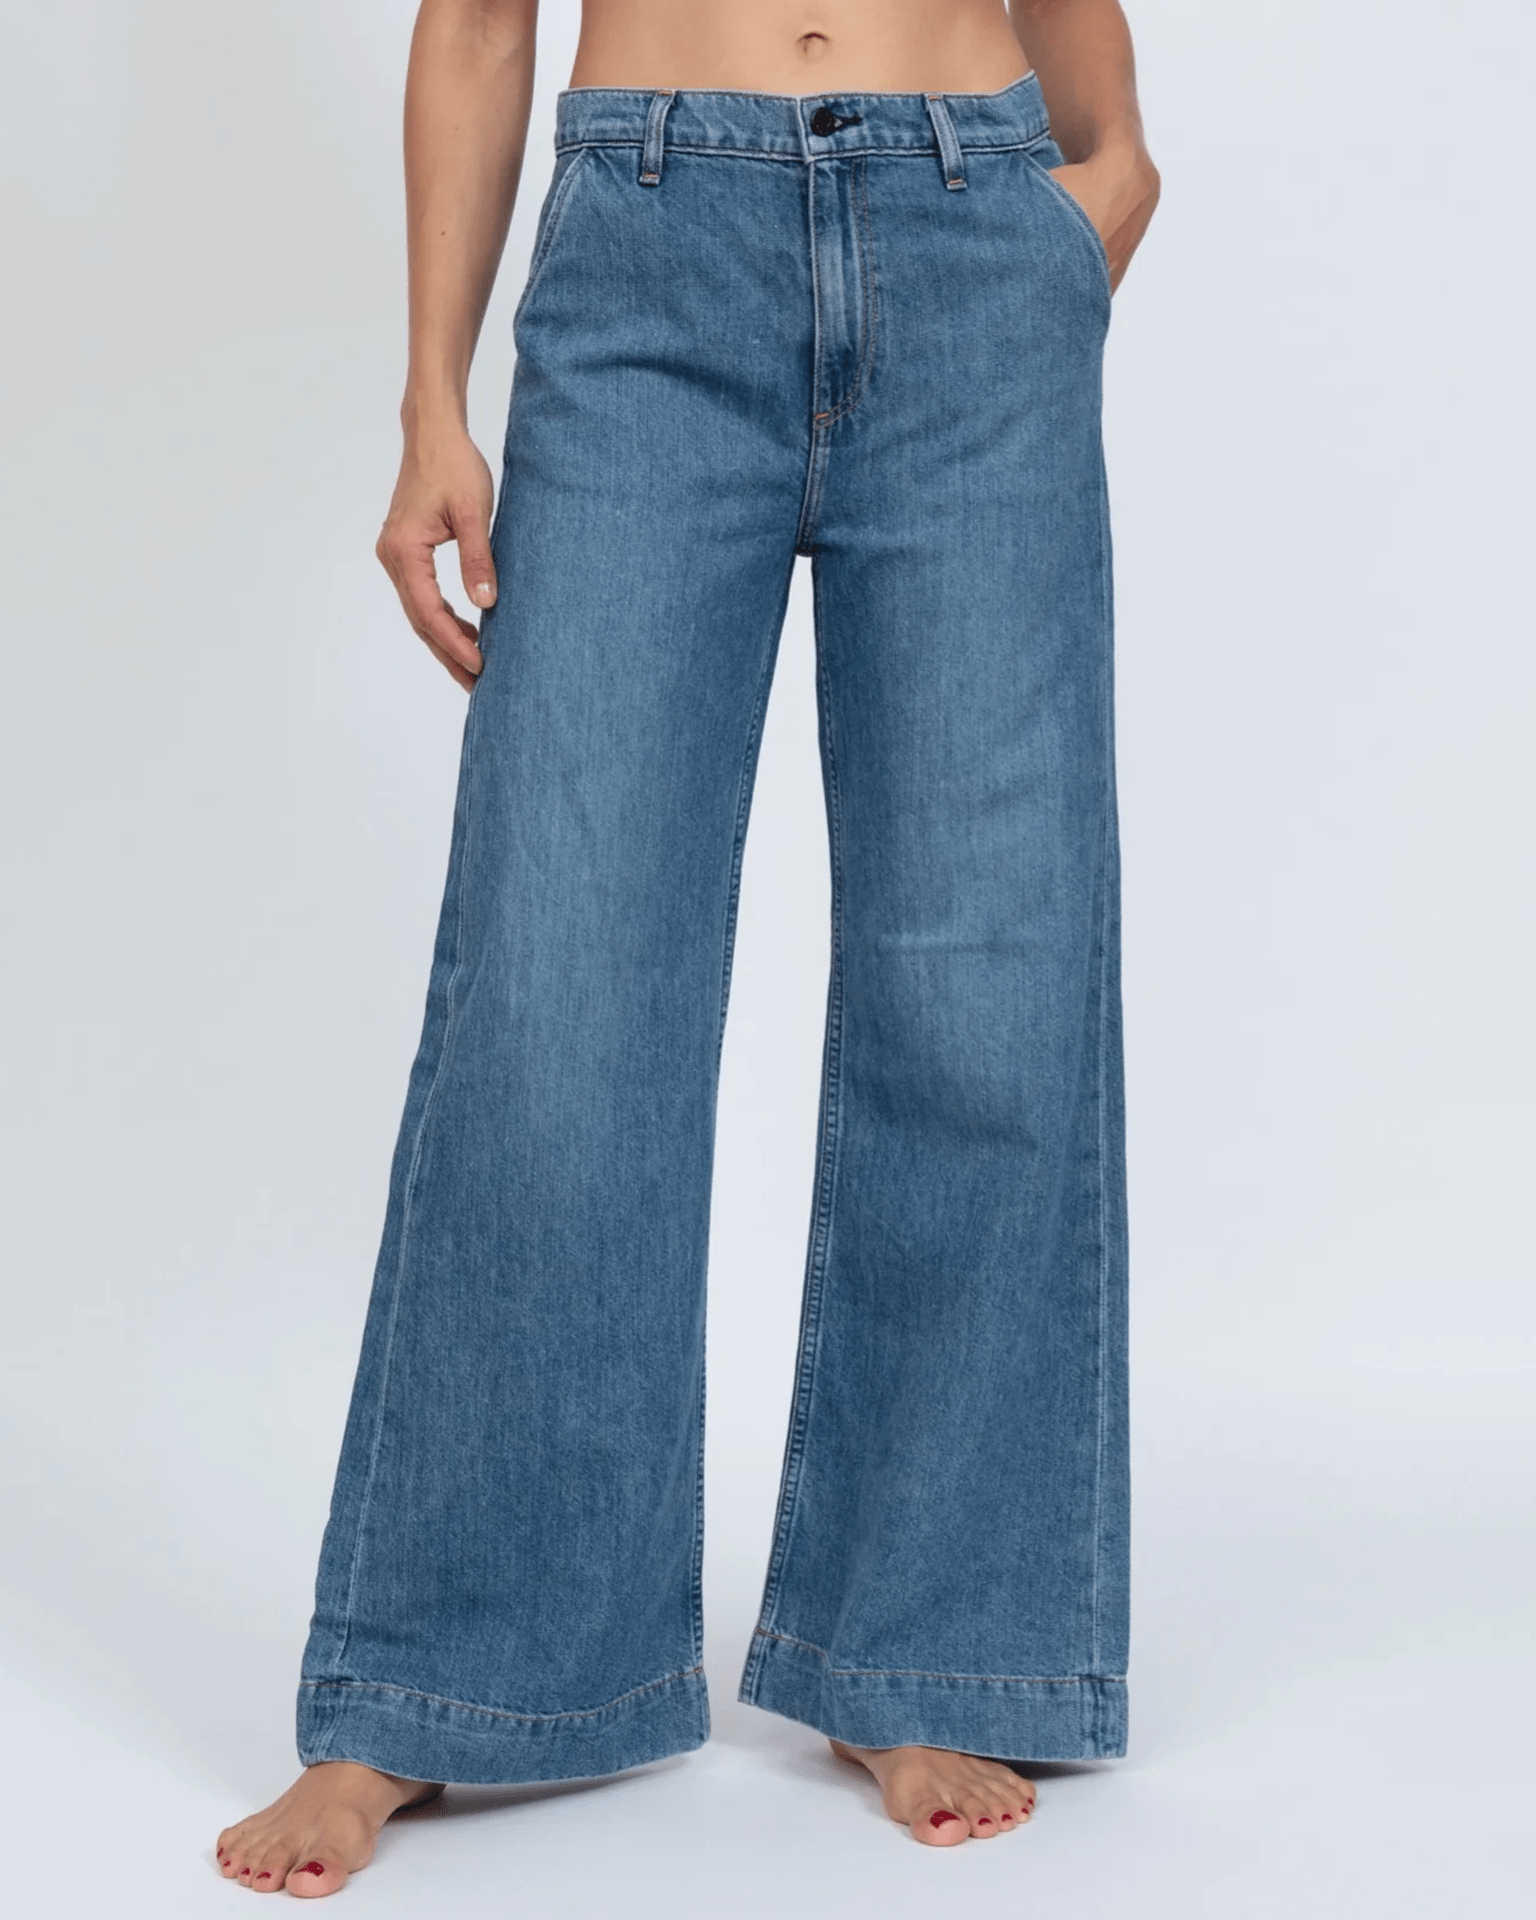 Trouser Jean in Rambler